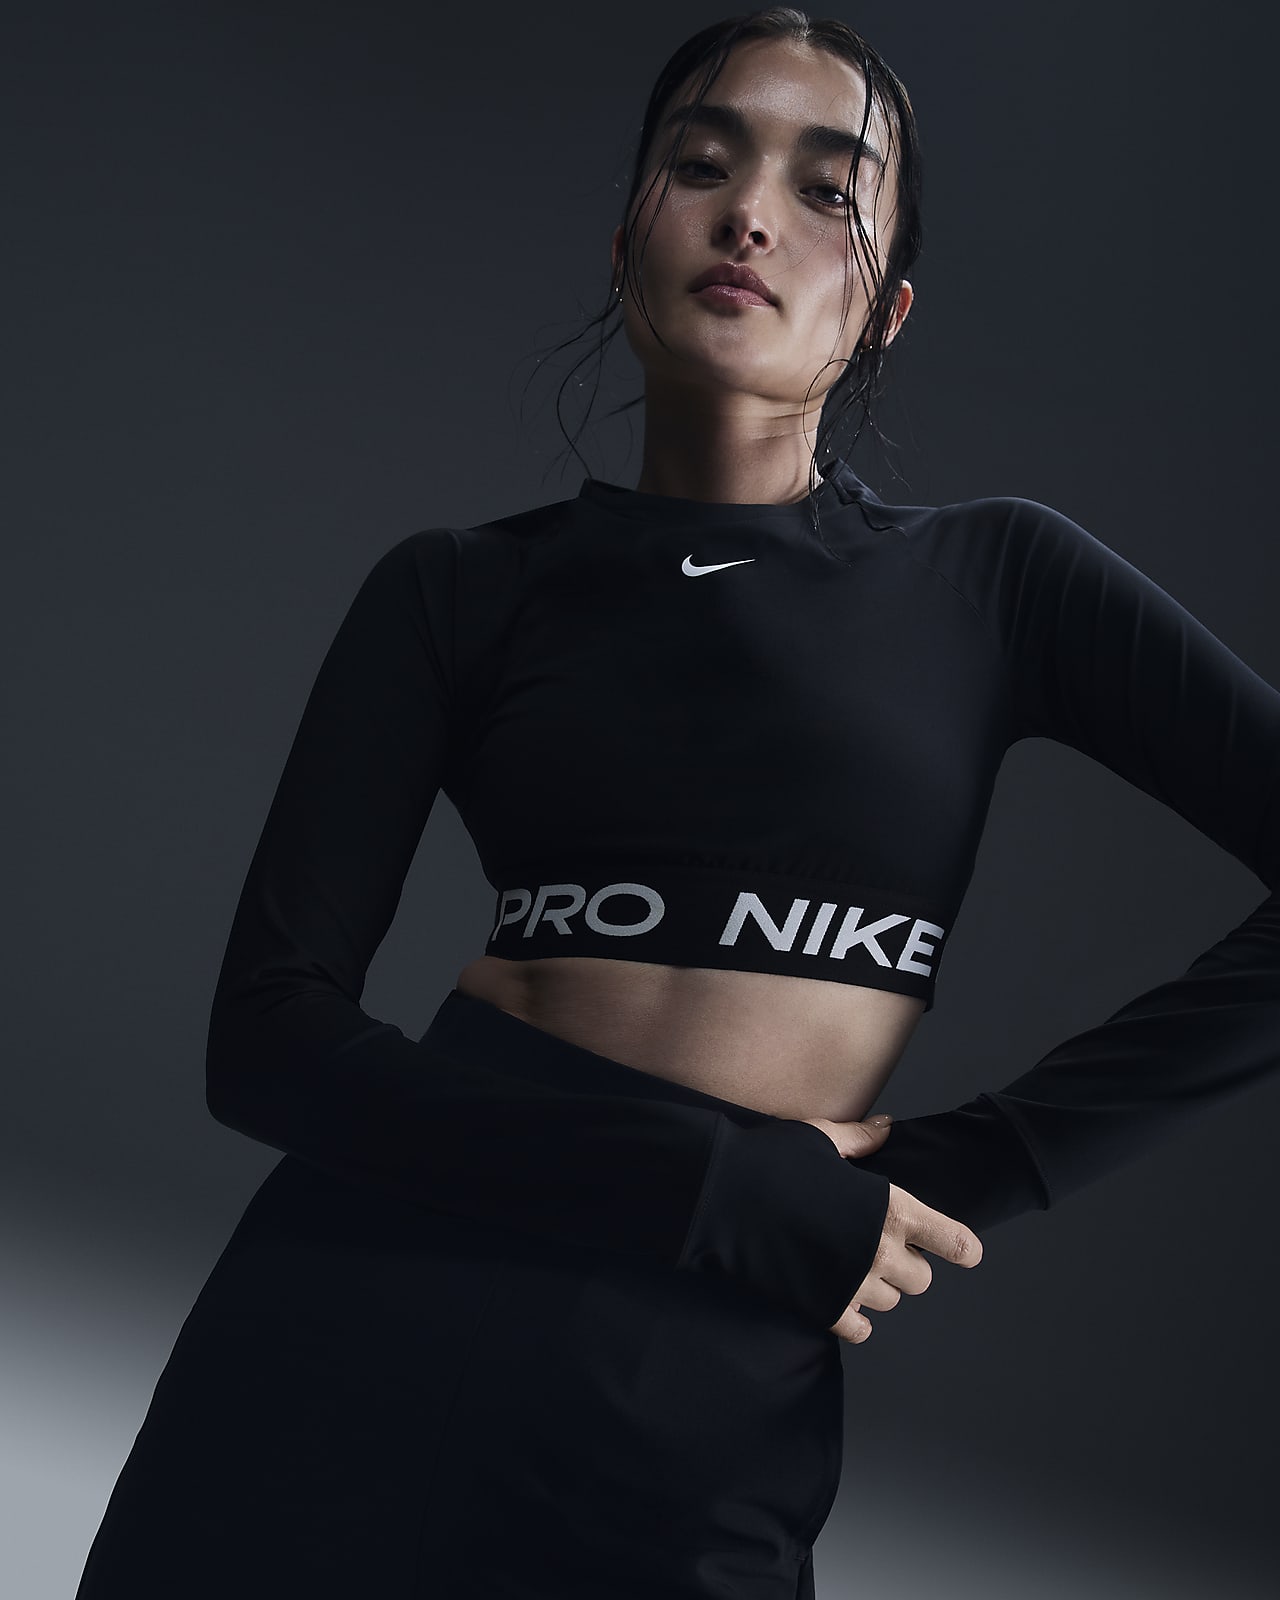 Nike Pro 365 女款 Dri-FIT 短版長袖上衣